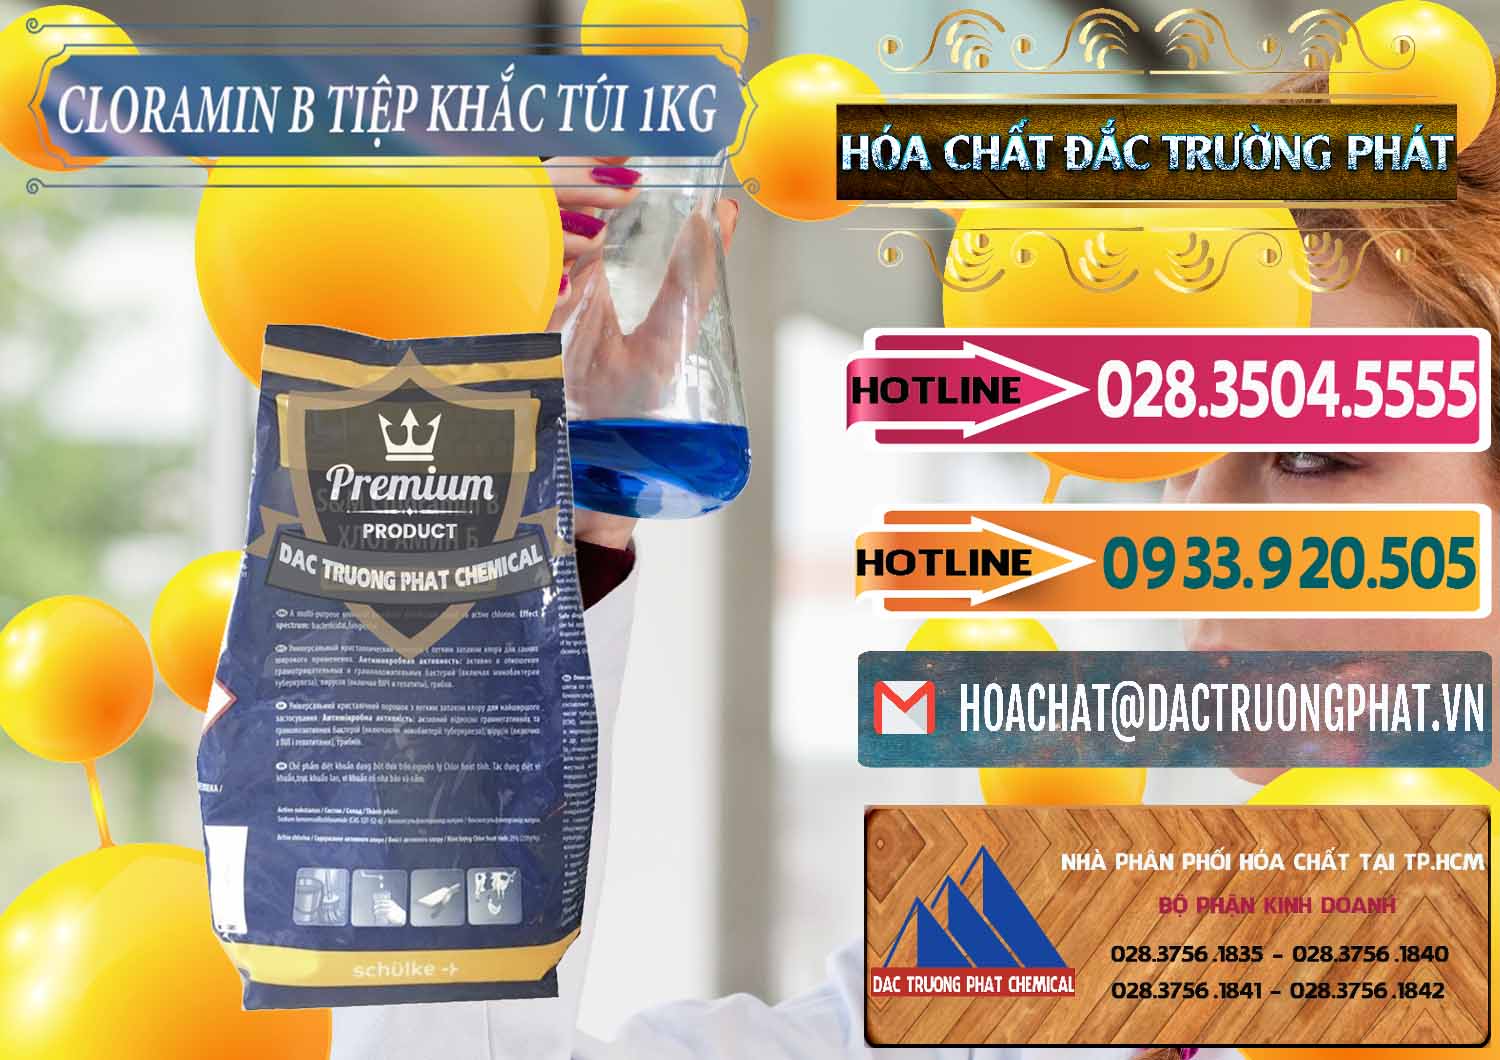 Công ty bán & cung cấp Cloramin B Dạng Túi ( Bịch ) Cộng Hòa Séc Tiệp Khắc Czech Republic - 0300 - Nơi chuyên bán - cung cấp hóa chất tại TP.HCM - dactruongphat.vn